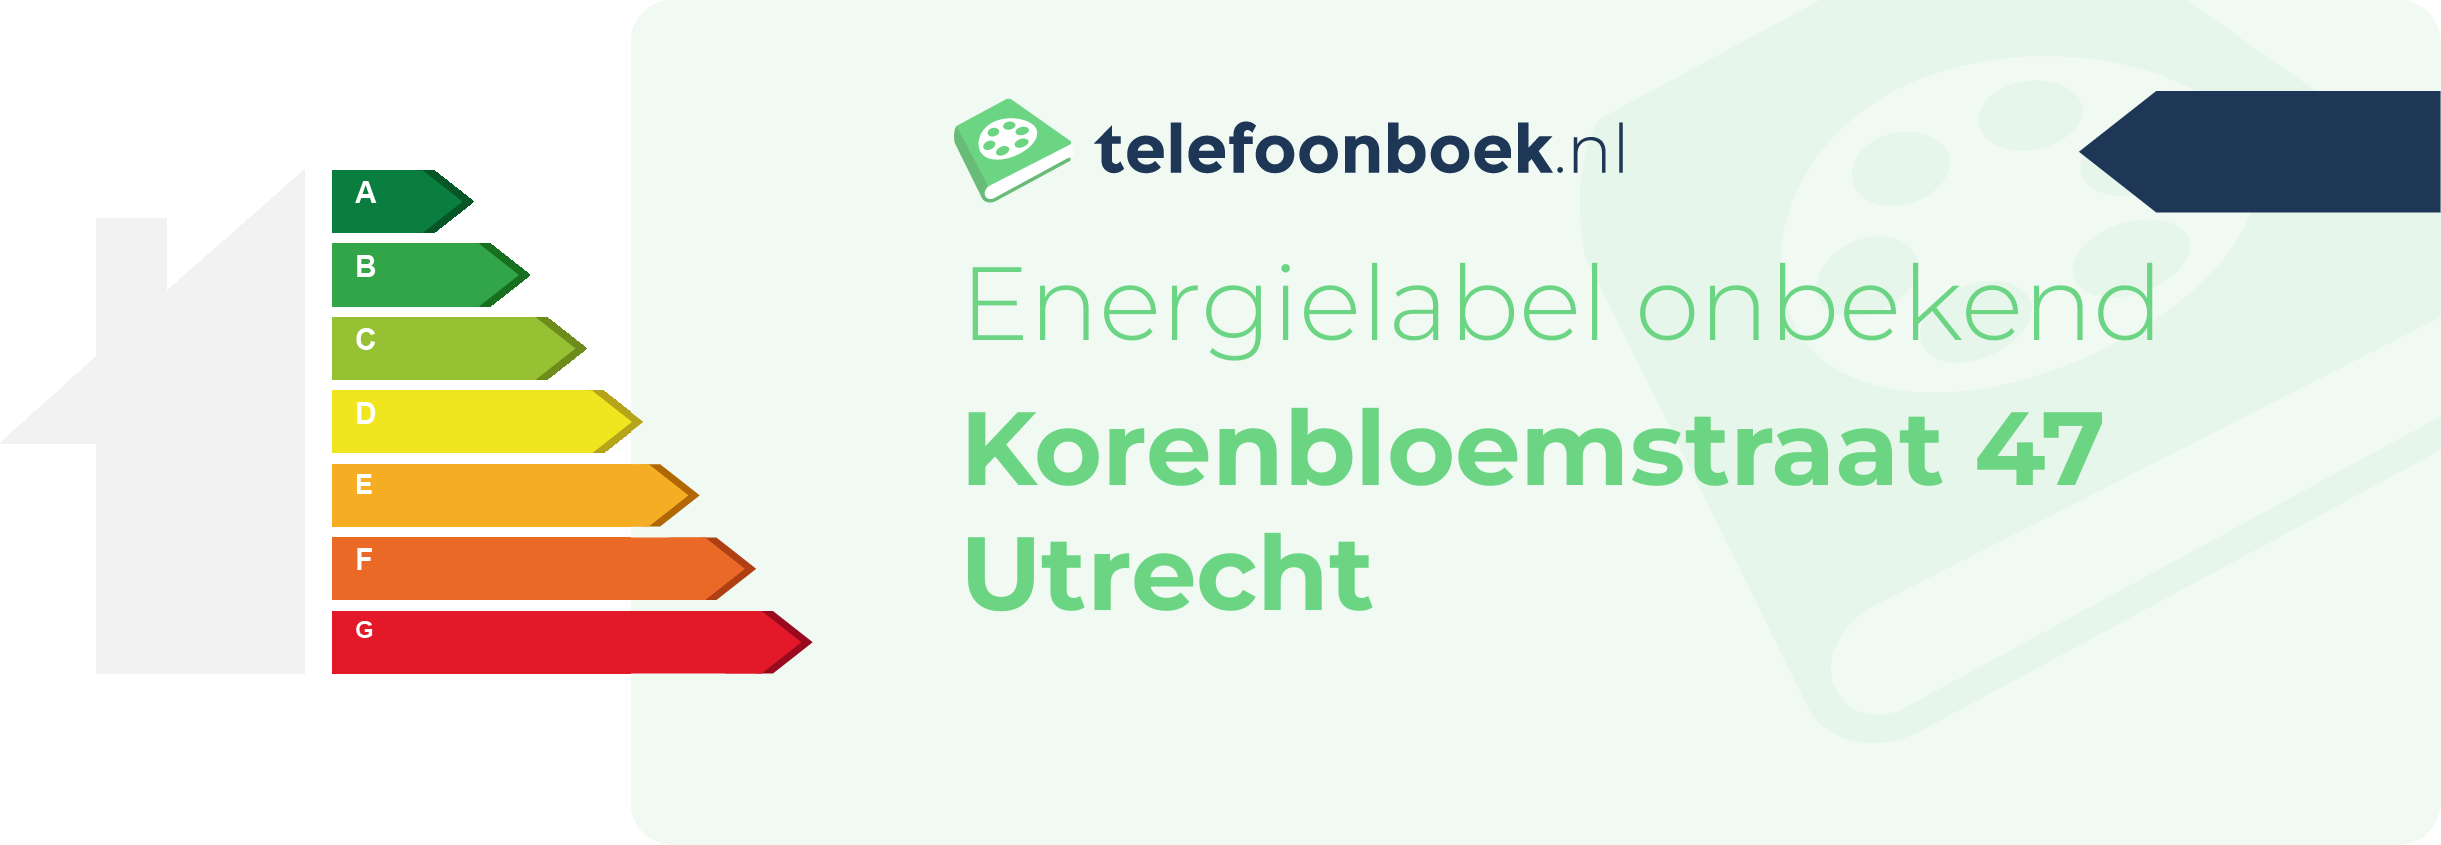 Energielabel Korenbloemstraat 47 Utrecht